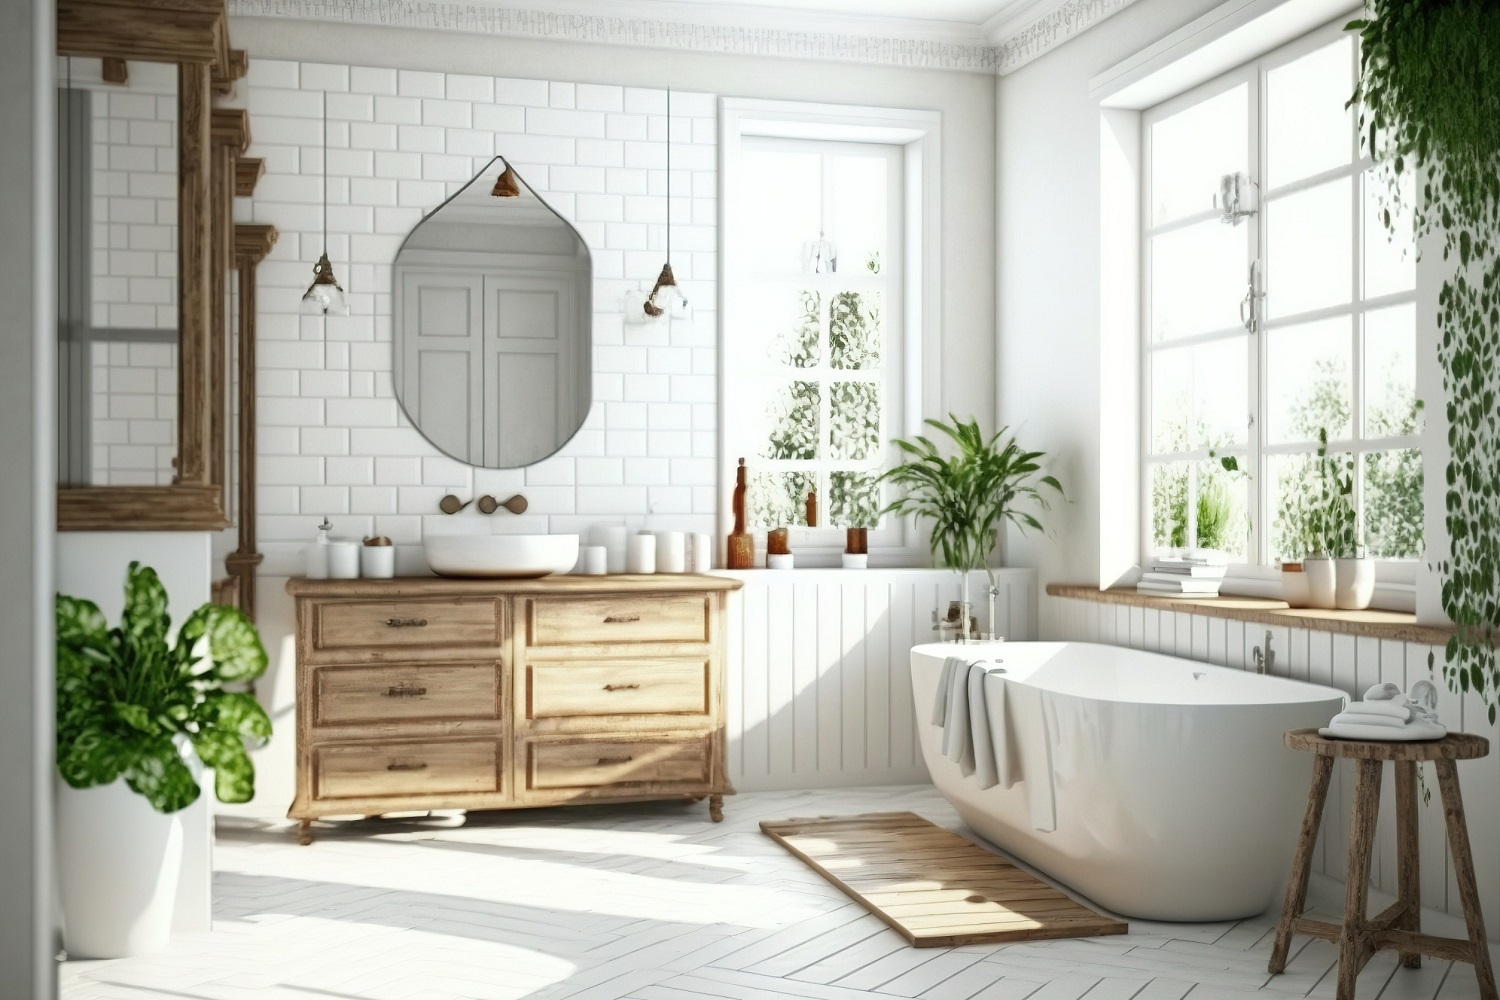 Rustic or Contemporary Bathroom Vanity?